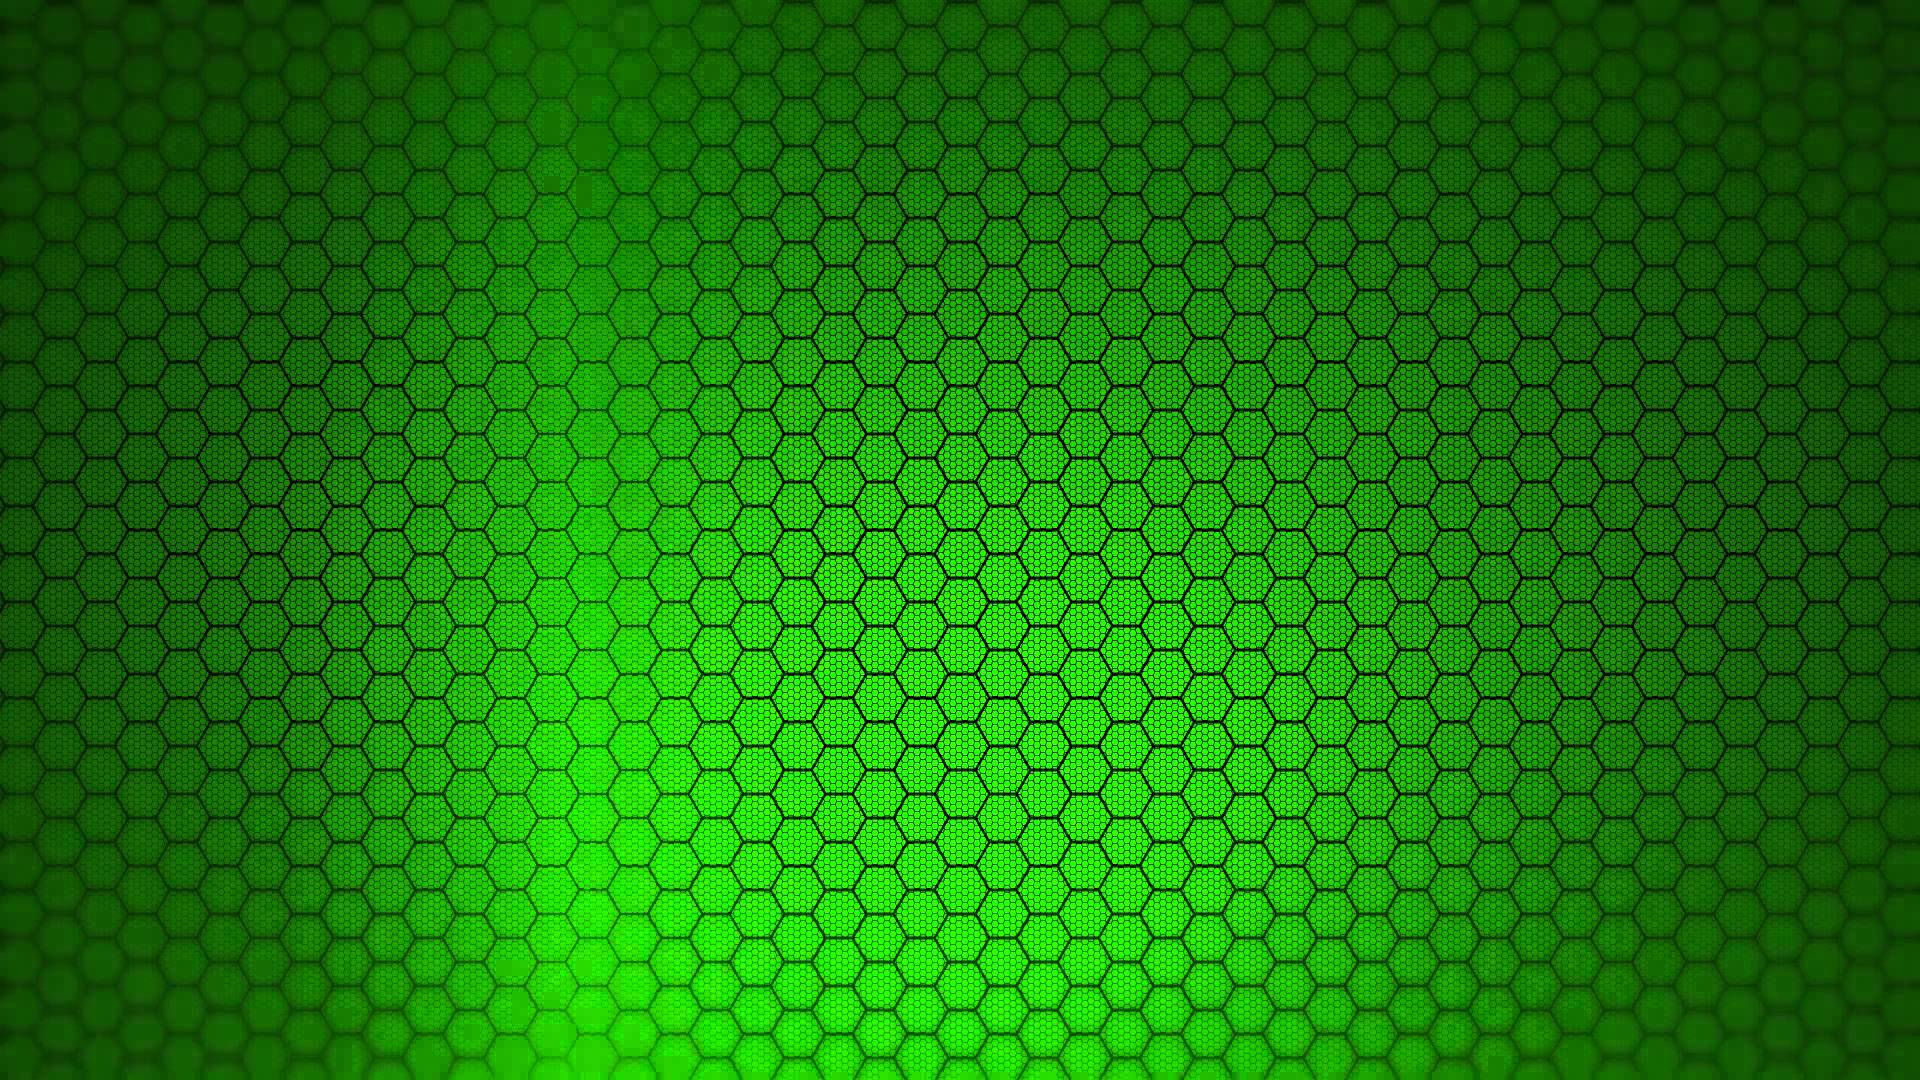 Hexagon Background: Nền tảng hình sáu cạnh độc đáo và tinh tế sẽ làm nổi bật hình ảnh của bạn, tạo nên một không gian sống động và hoàn hảo. Hãy trổ tài thiết kế của mình với những mẫu nền hexagon này và thỏa mãn trí tưởng tượng của mình.